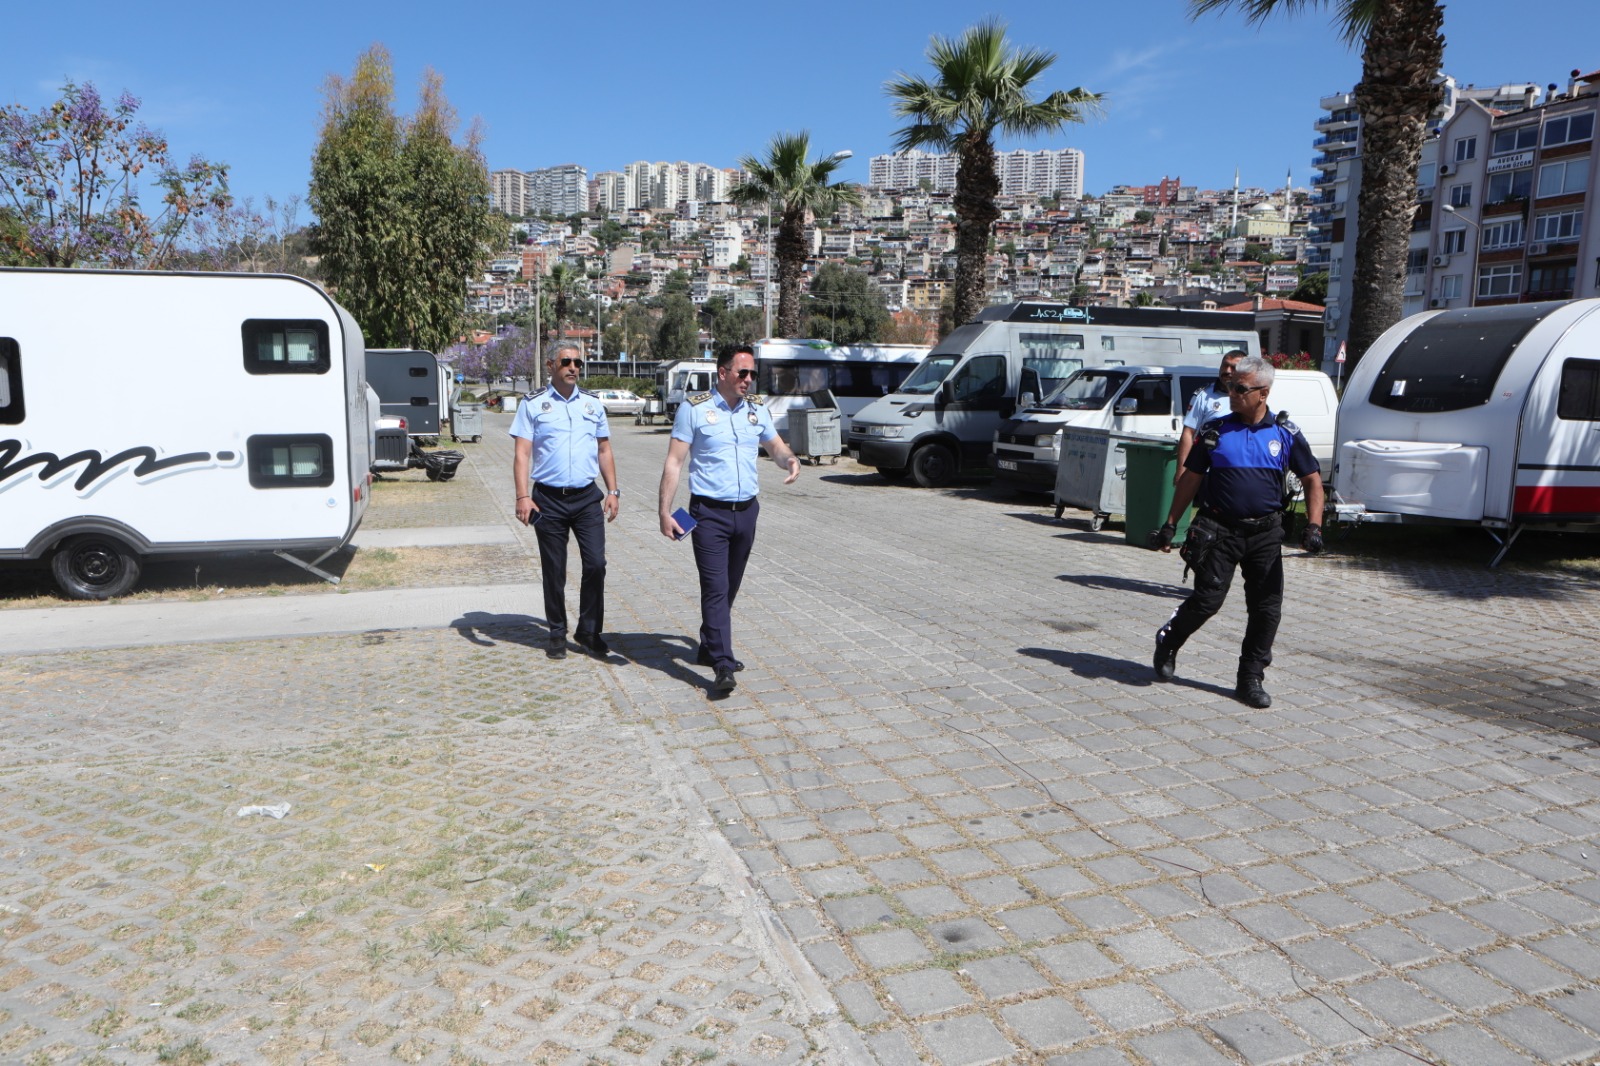 İrfan Önal Bayraklı Belediyesi, sahil bölgesindeki park halinde bulunan karavanların kaldırılması için harekete geçti. Yasak olmasına rağmen yol kenarlarına park edilen 105 karavan vatandaşlardan gelen yoğun şikayetler de dikkate alınarak zabıta ekipleri tarafından kaldırılmaya başlandı. Bayraklı Belediyesi, İzmir Büyükşehir Belediyesi ve İzmir Emniyet Müdürlüğü ile ortaklaşa yapılan çalışmada karavan sahipleri uyarıldı ve ihtar verildi. Belirtilen sürede kaldırılmayan karavanların ekiplerce kaldırılacağı ifade edildi.